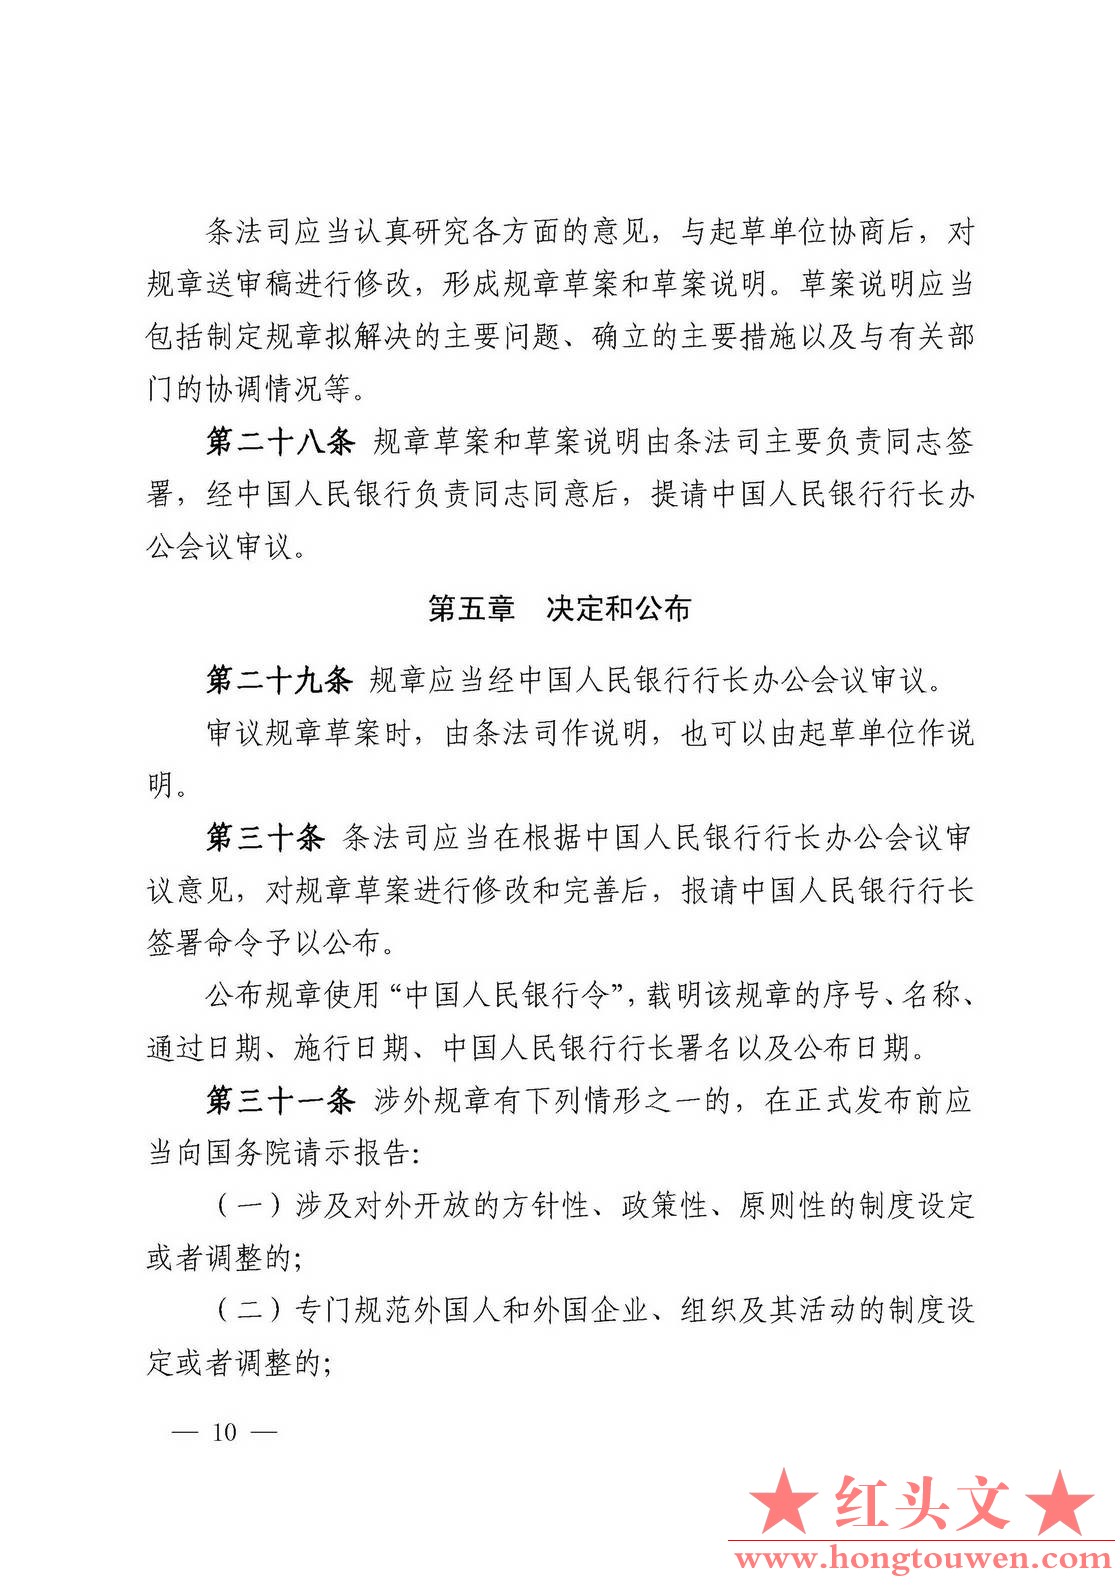 中国人民银行令[2018]3号-中国人民银行规章制定程序与管理规定_页面_10.jpg.jpg